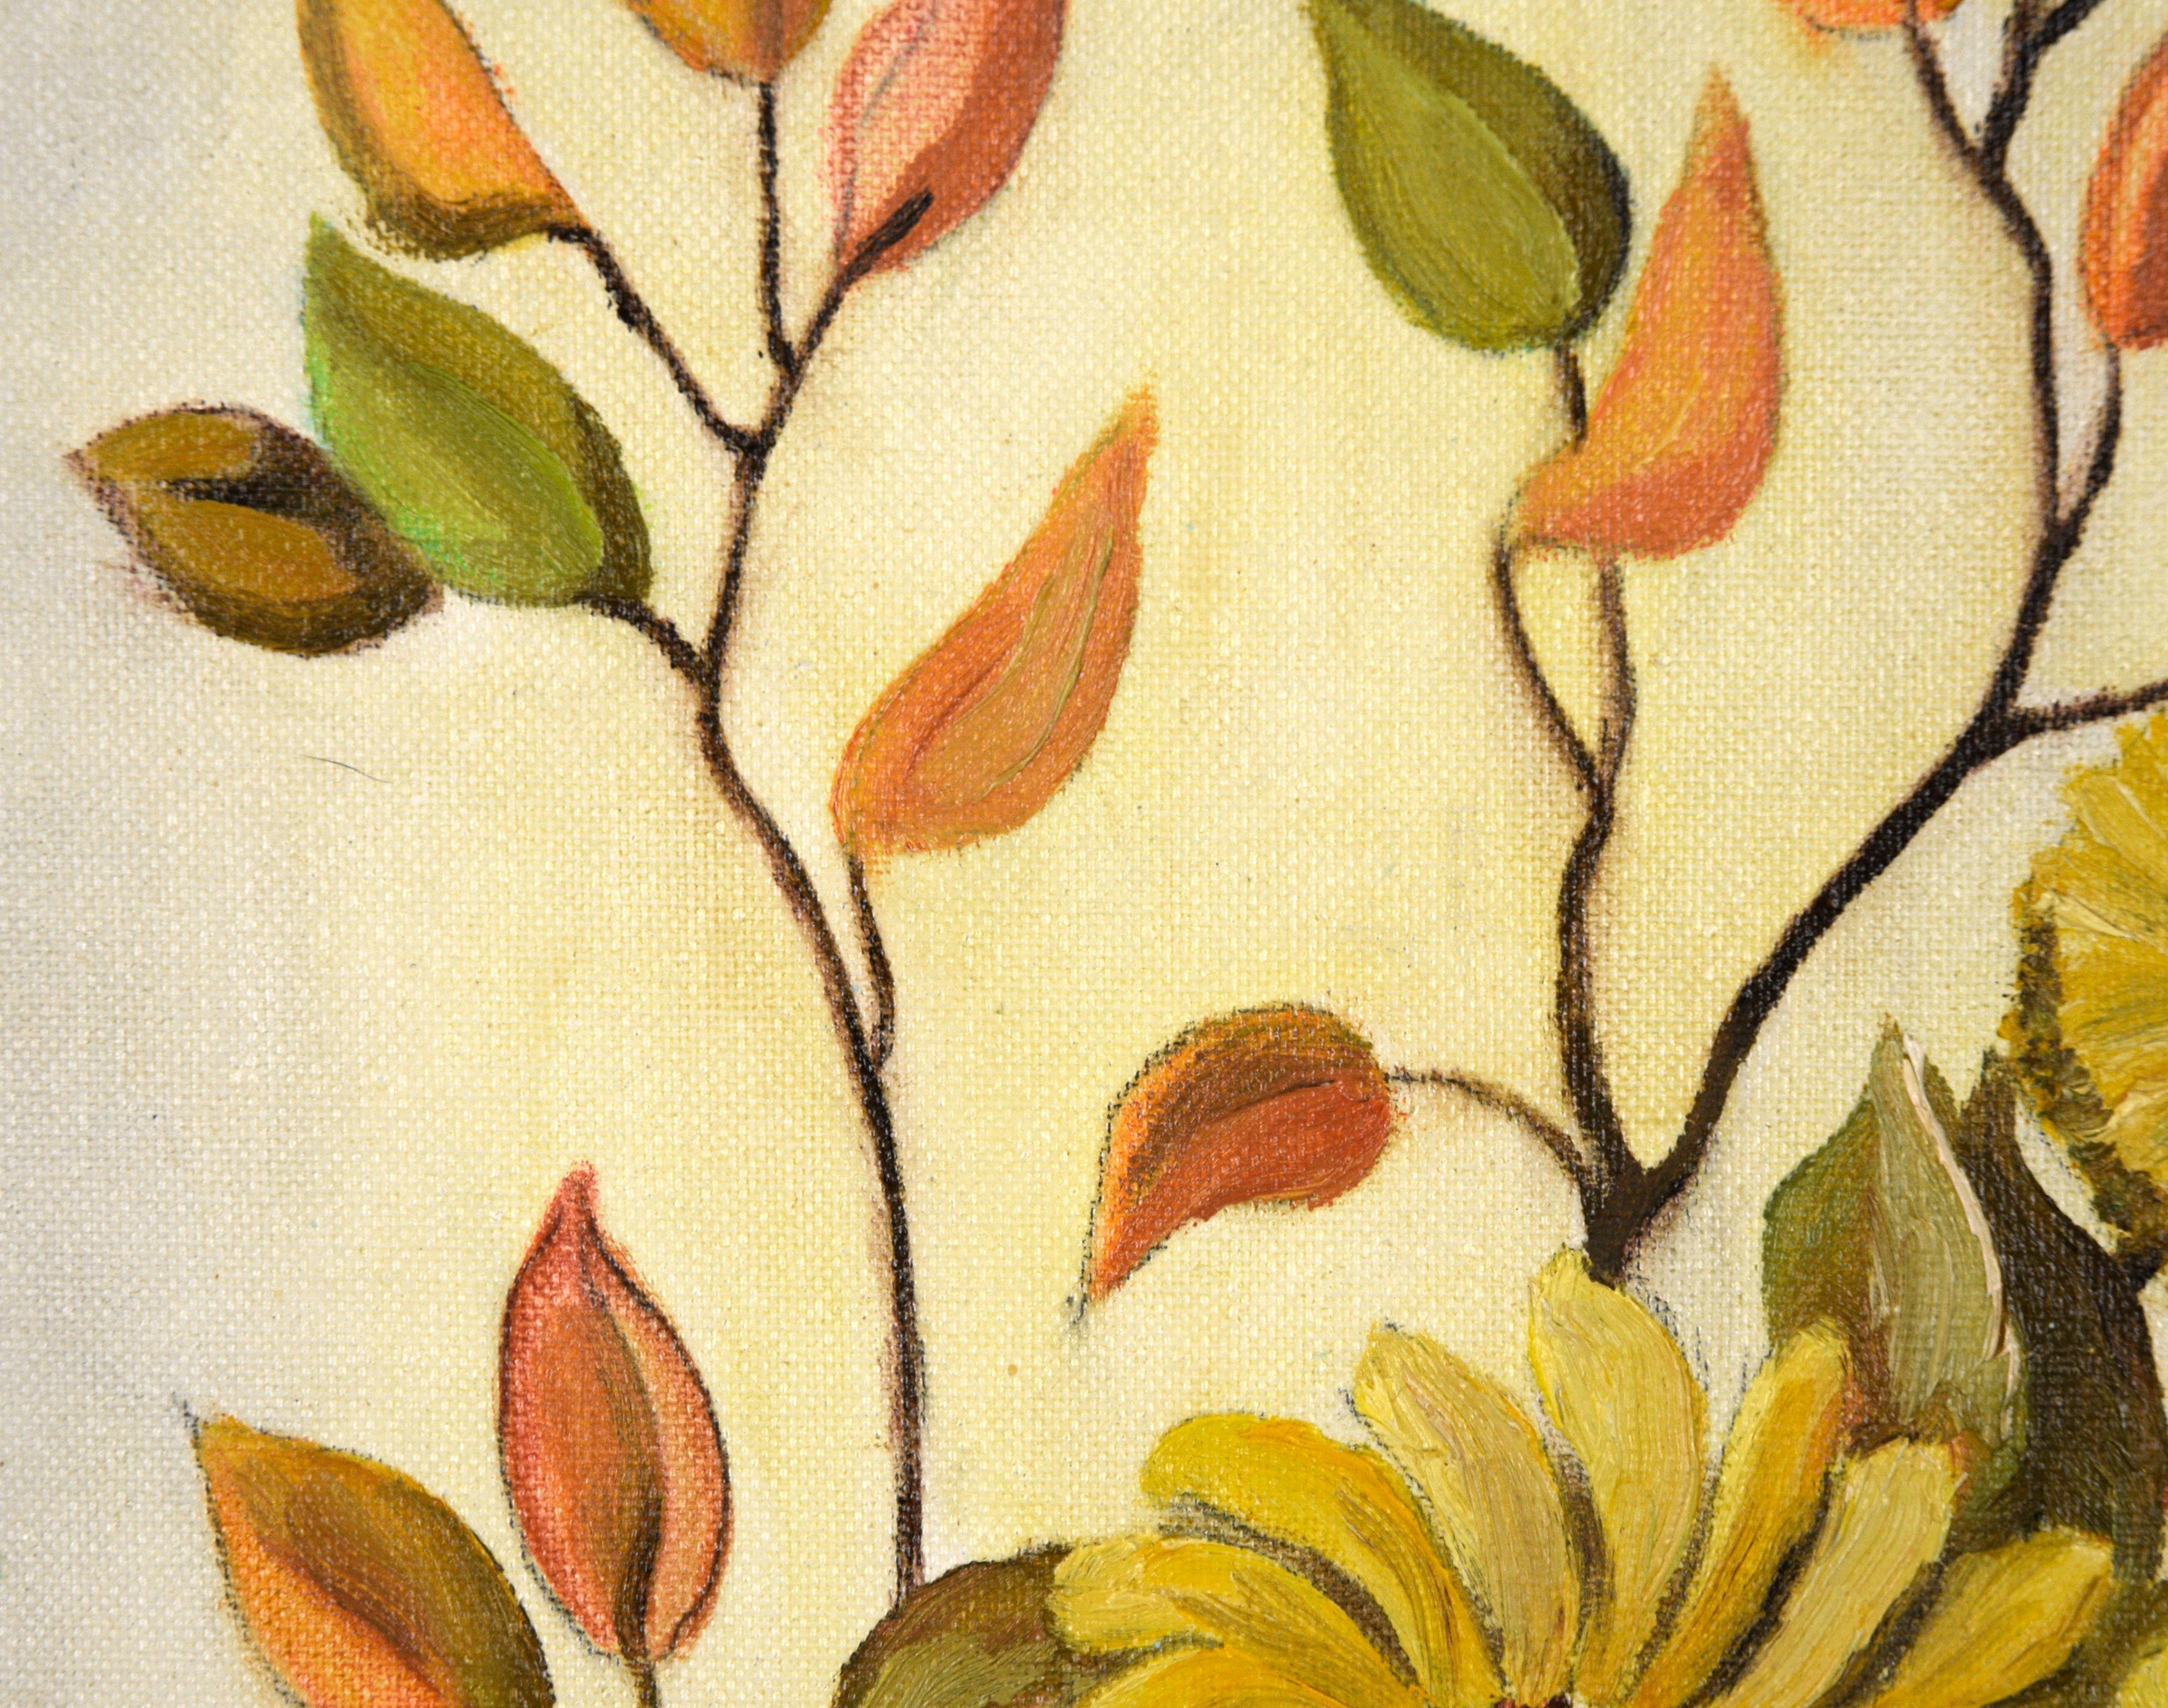 Stillleben aus der Mitte des Jahrhunderts von der amerikanischen Künstlerin Jean M. Stites aus Fayetteville, North Carolina (geb. 1929). Eine Vielzahl von gelben Blüten steht in einer rötlichen Vase, umgeben von Zweigen mit orangefarbenen und grünen